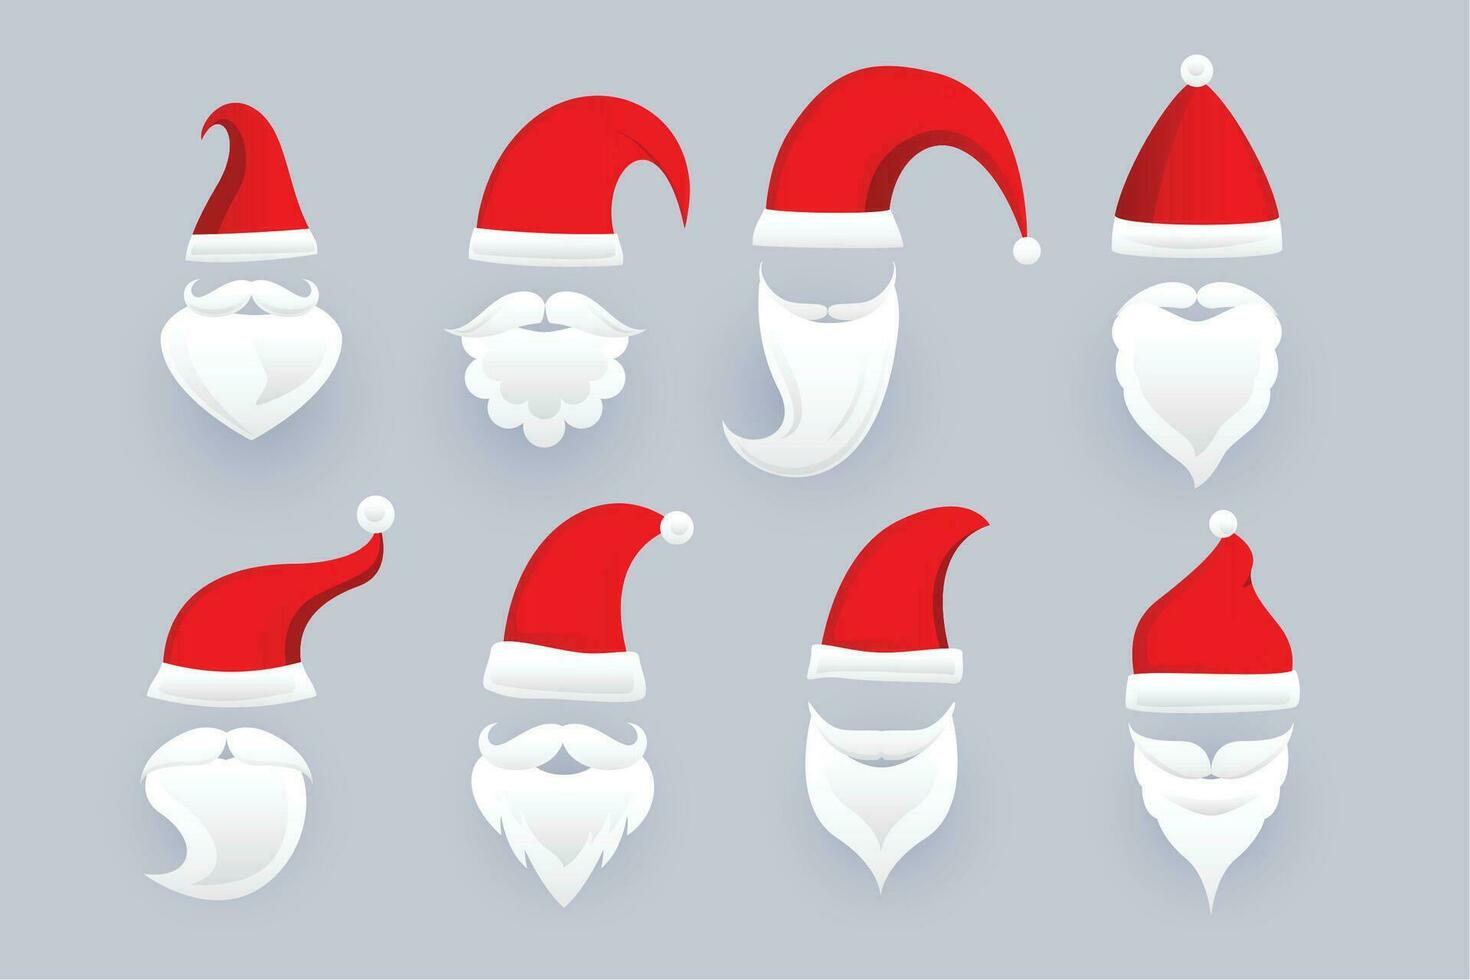 reeks van de kerstman claus pet en baard ornamenten in verschillend ontwerp vector